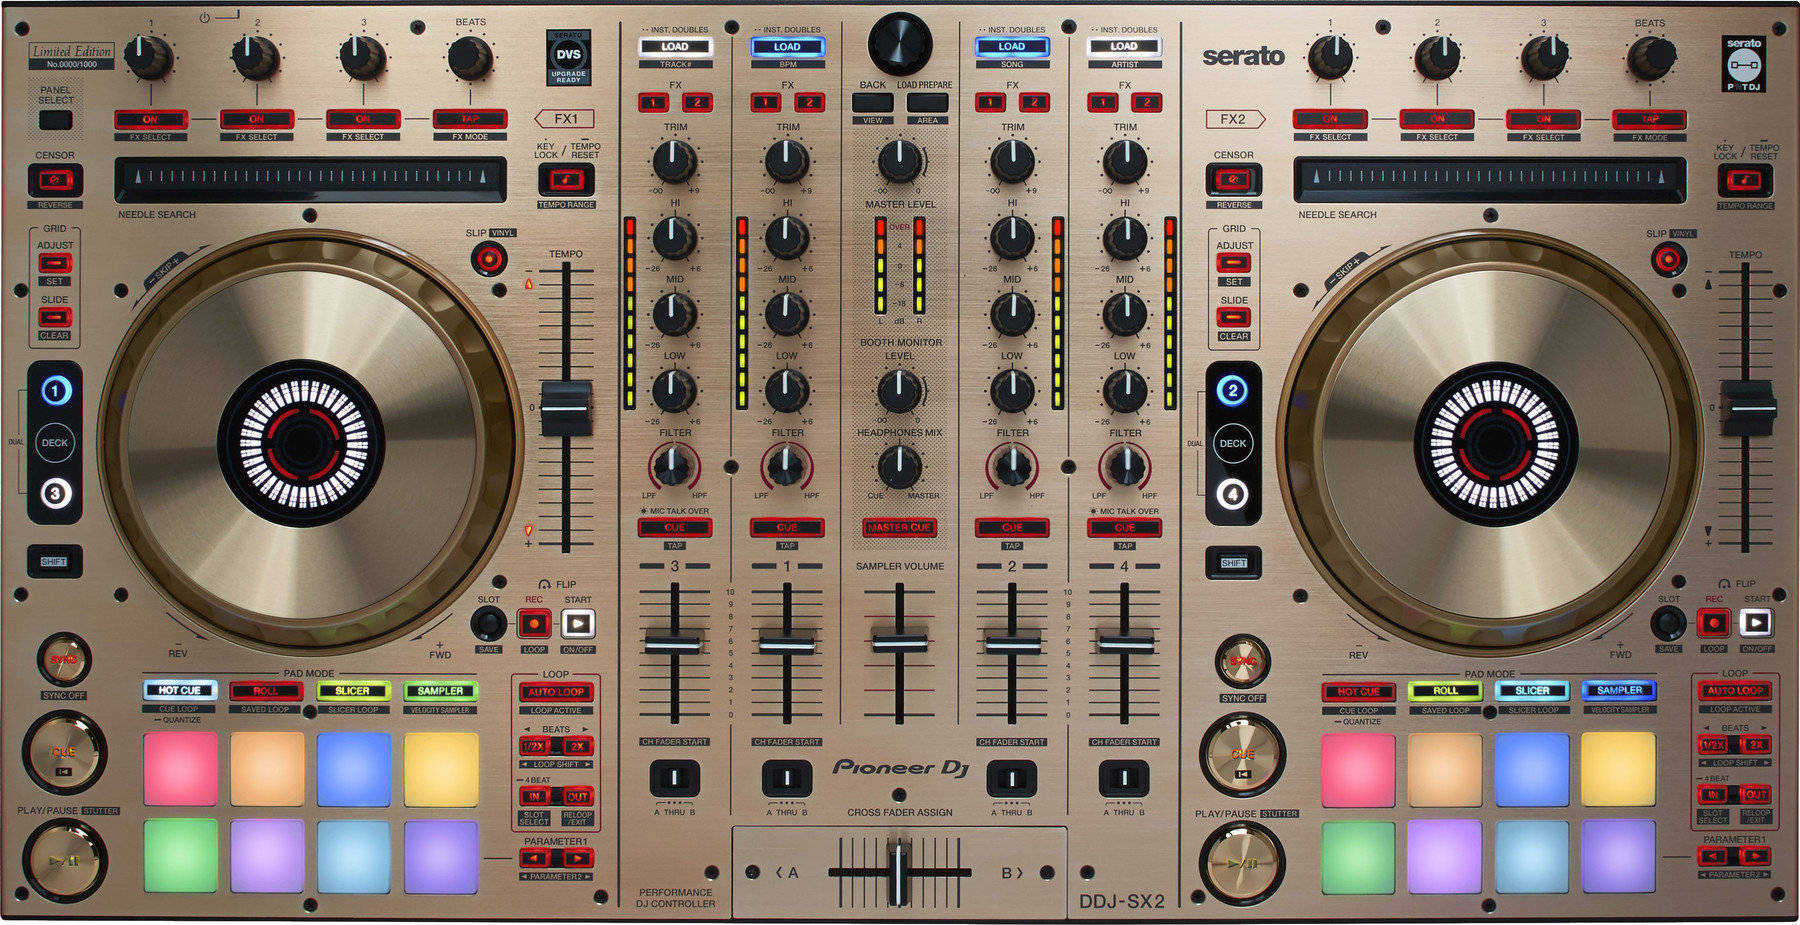 DJ kontroler Pioneer Dj DDJ-SX2-N